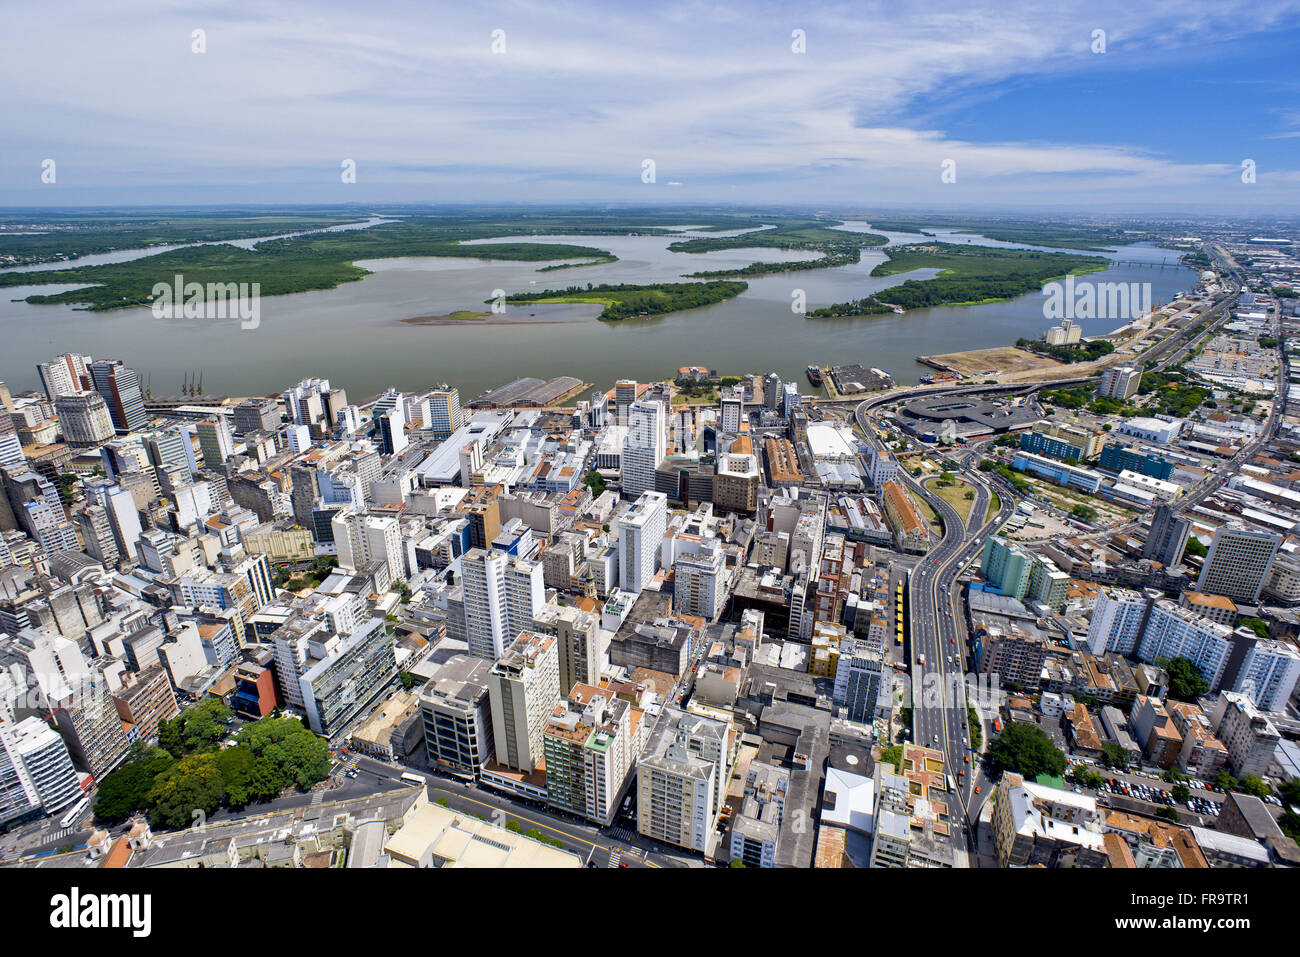 Vista aérea do centro da cidade e estuário do Delta do Jacuí ao fundo - zona portuária Stock Photo